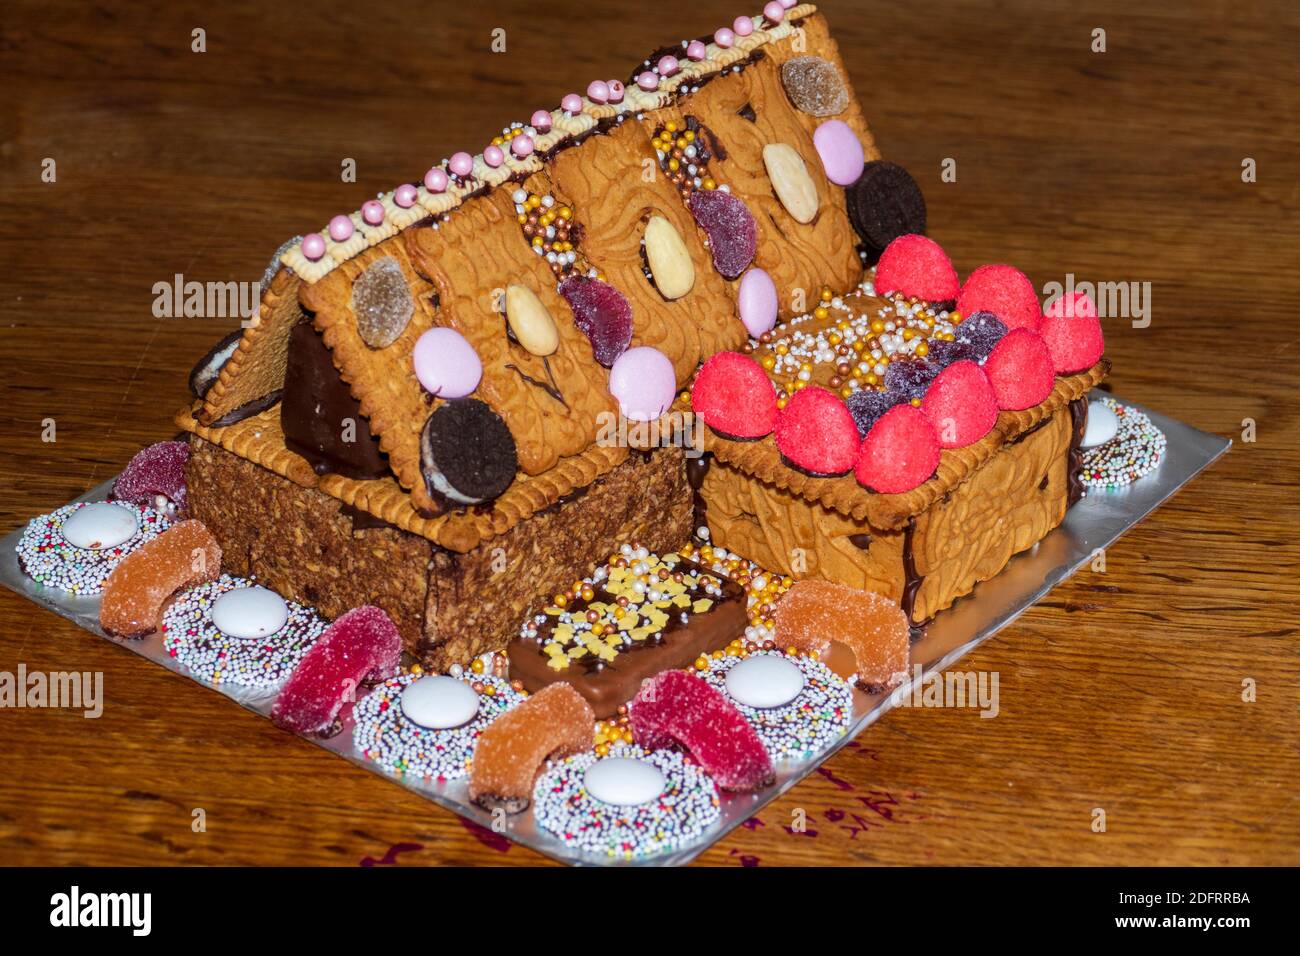 Knusperhäuschen aus Lebkuchen, Keksen, Spekulatius und Süßigkeiten Foto Stock